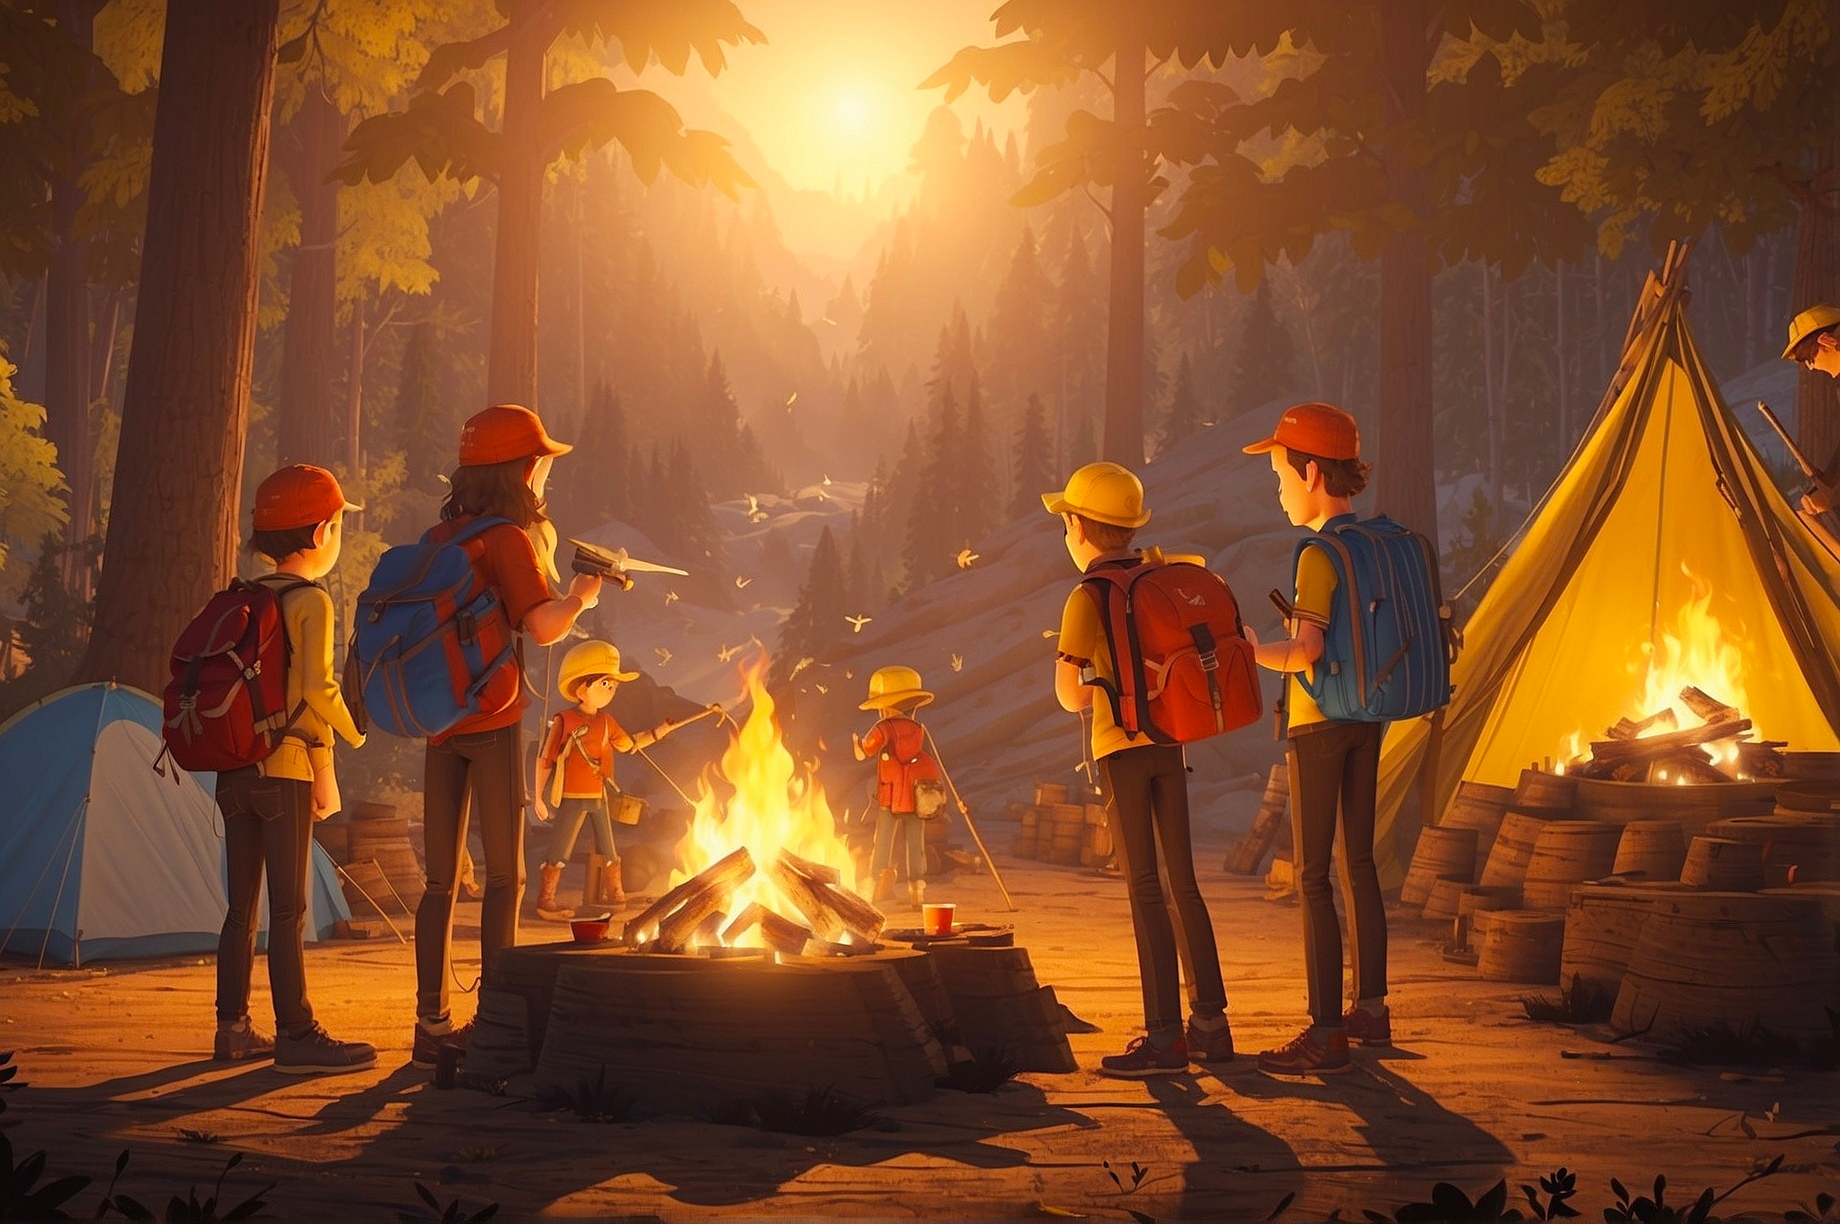 Children around a bonfire